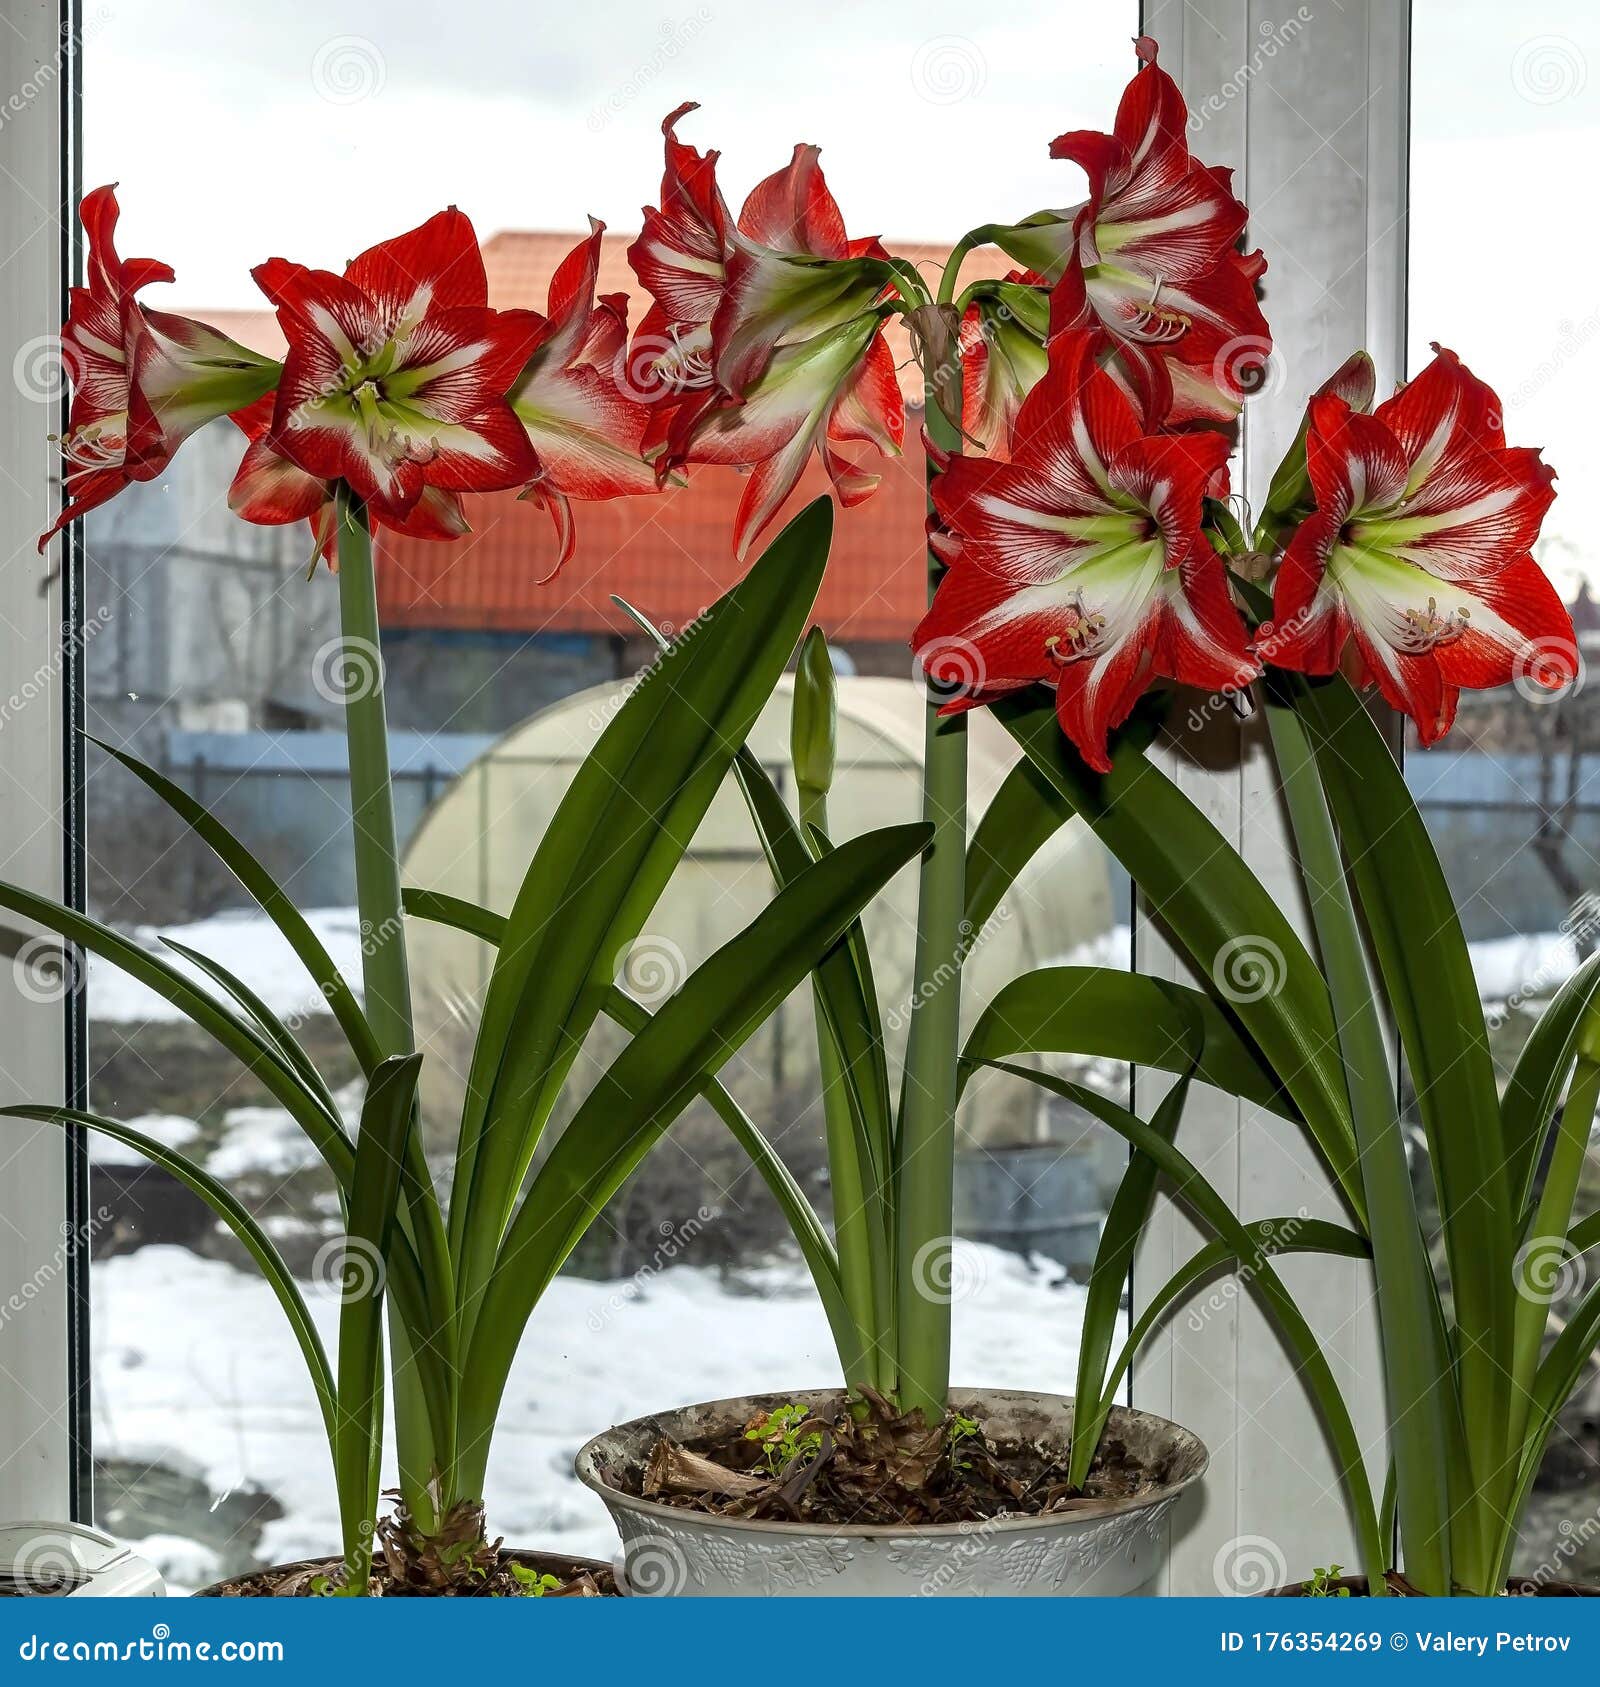 Beautiful Large Red Amaryllis Flowers Stock Image - Image of ...